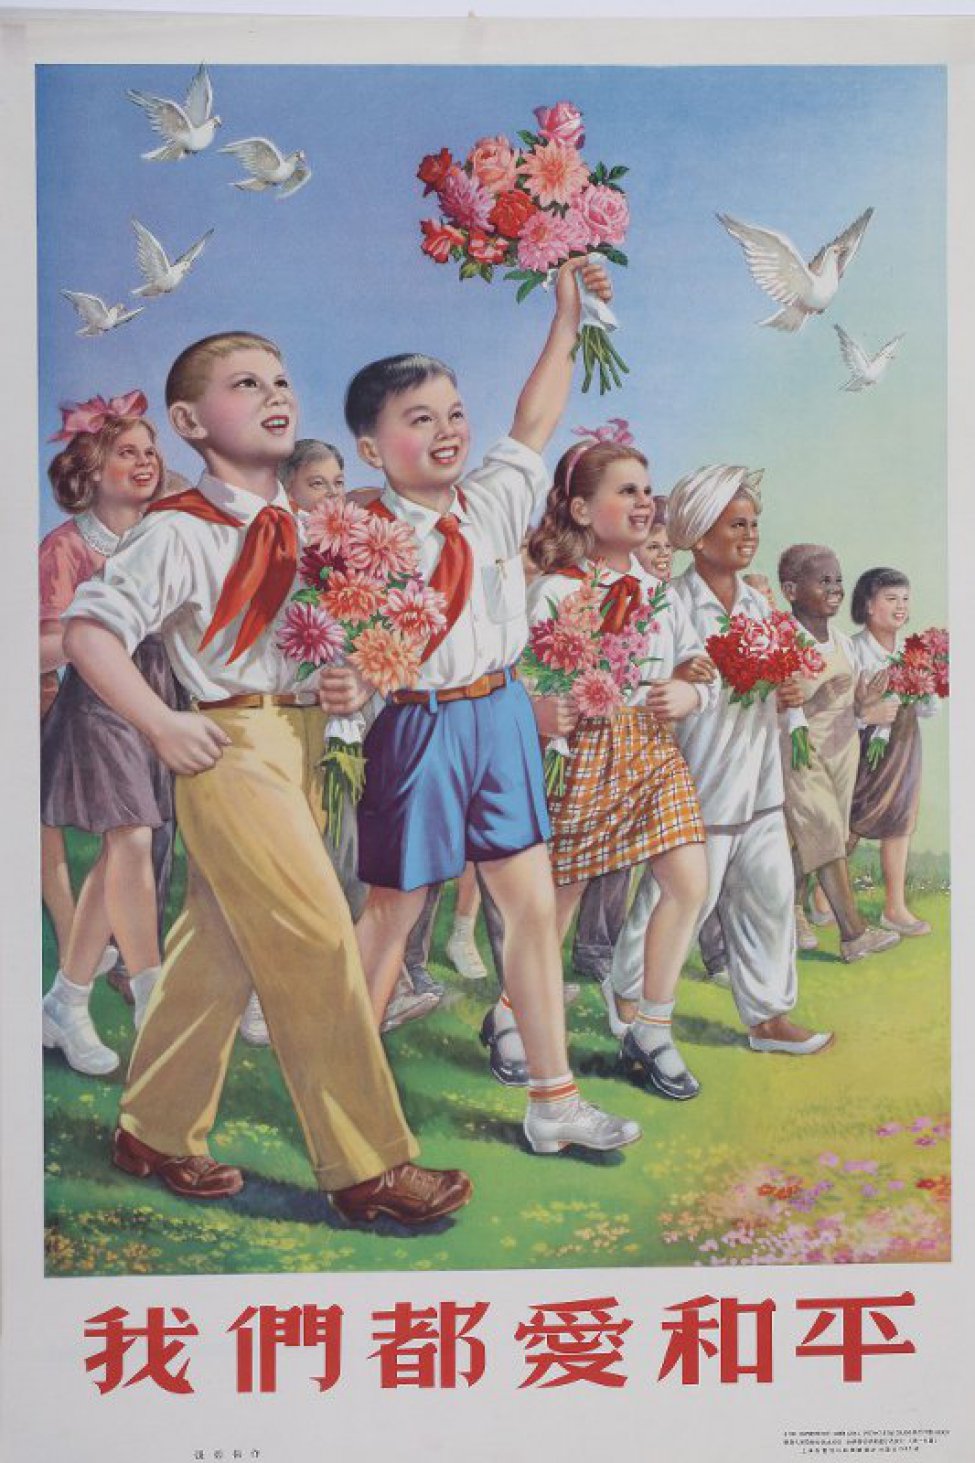 Изображены дети- представители разных национальностей с букетами цветов, идущие по зеленому полю. Над ними в небе летят белые голуби. Над плакатом надпись из шести иероглифов.